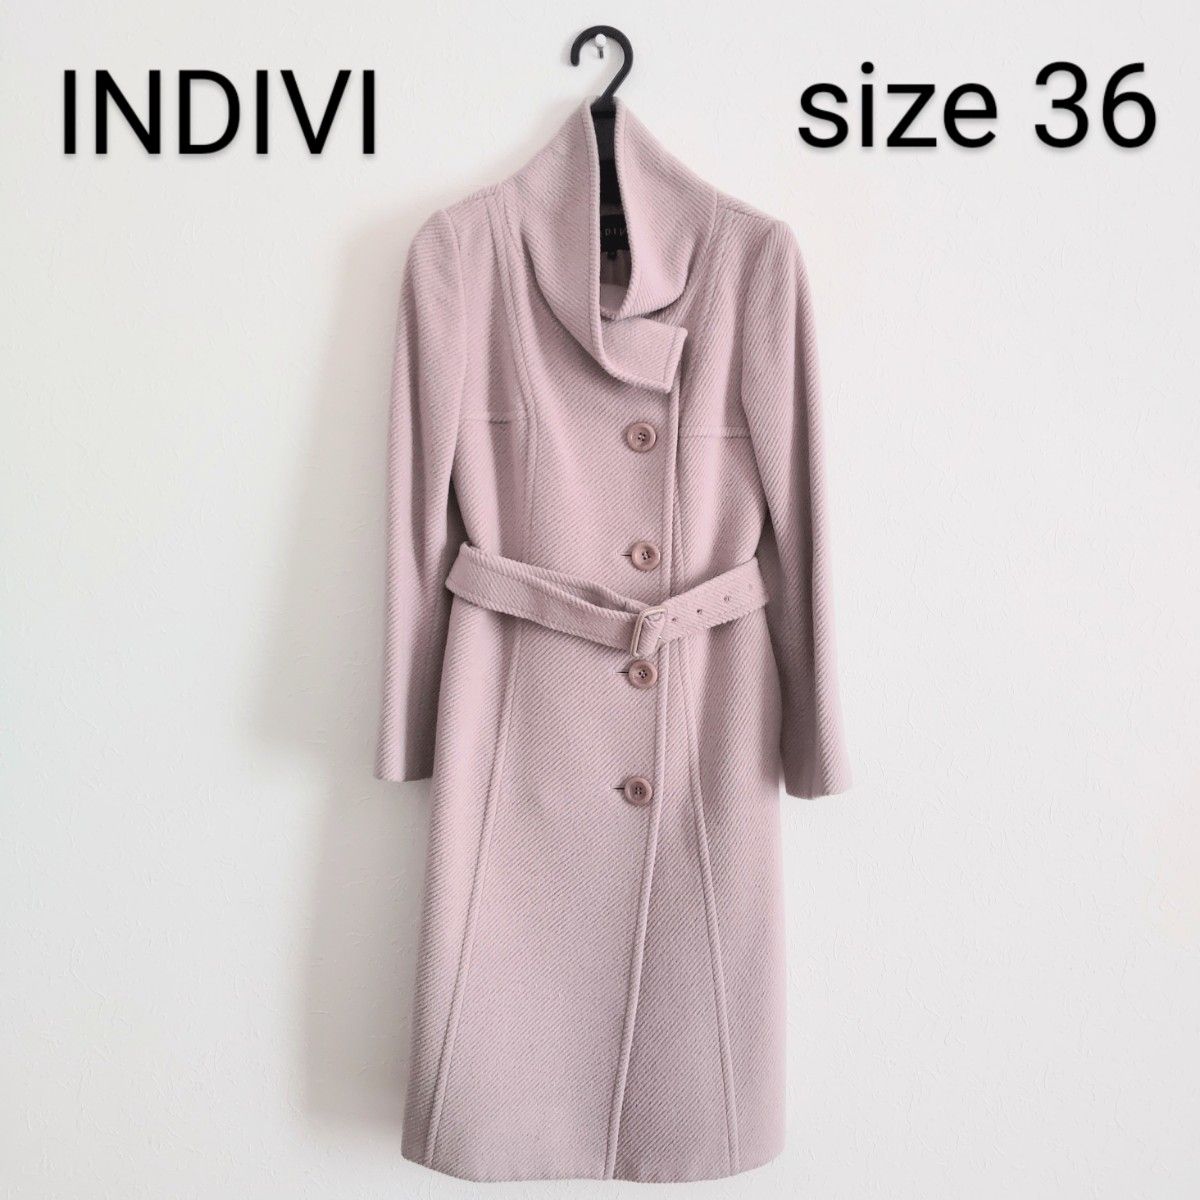 INDIVI/ウールロングコート/36サイズ/ピンク系/上品/ベルト付き/インディヴィ/日本製/アウター